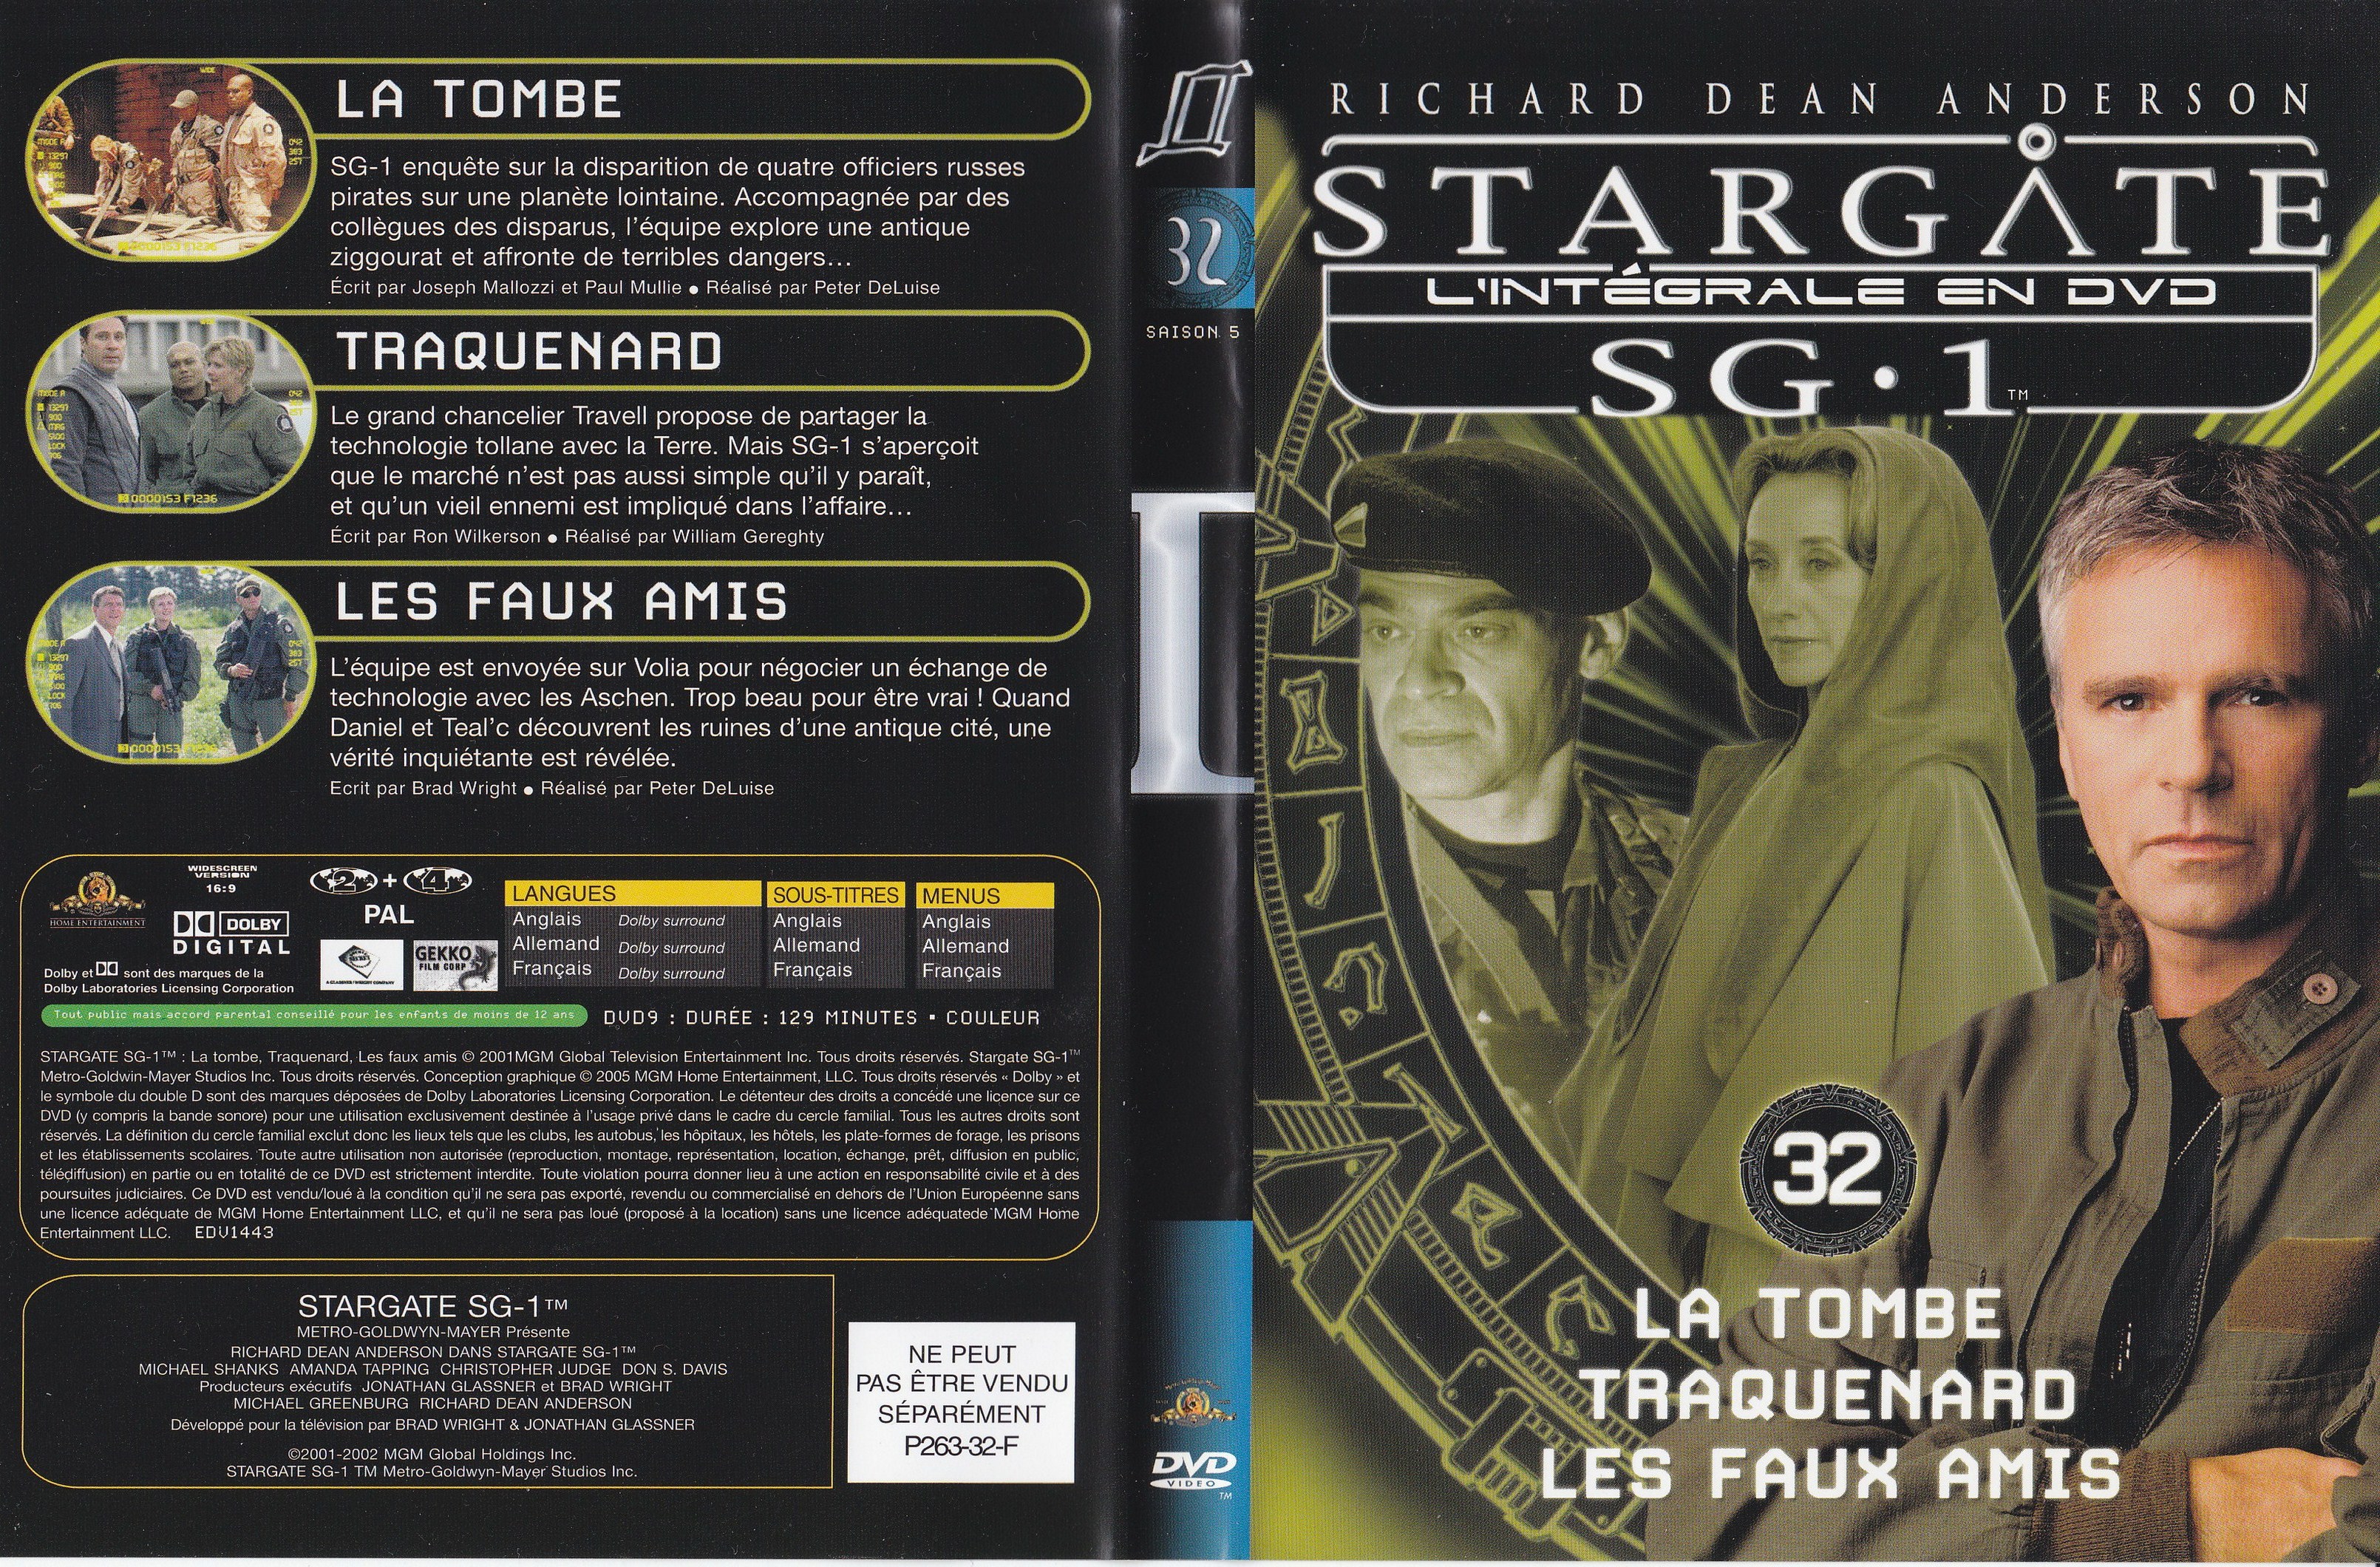 Stargate SG1 Intgrale Saison 5 vol 32